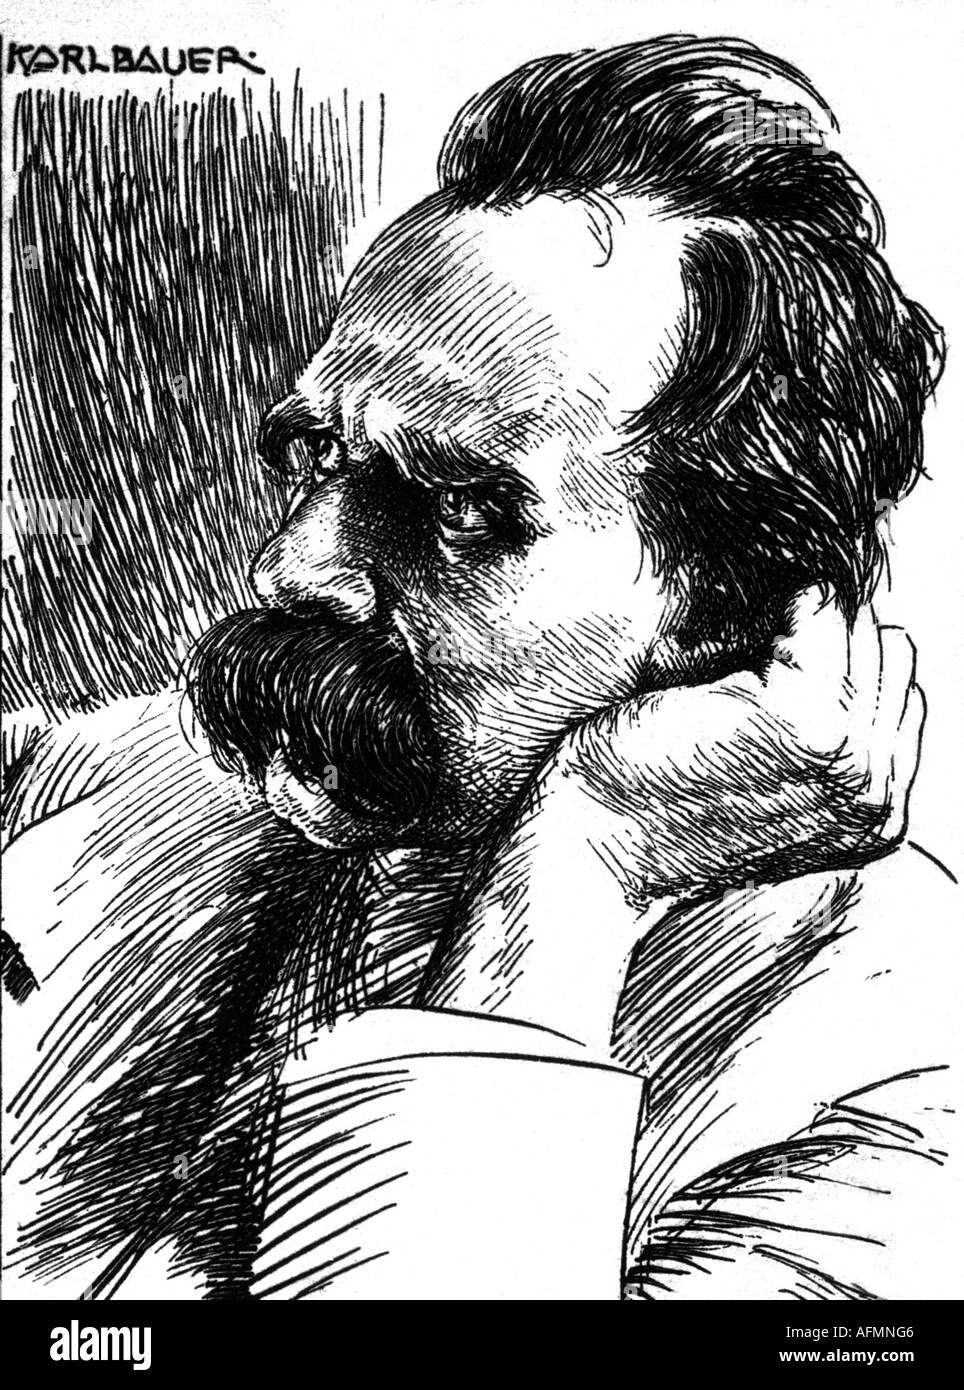 Nietzsche, Friedrich, 15.10.1844 - 25.8.1900, German philosopher, portrait, drawing by Karl Bauer, , Stock Photo